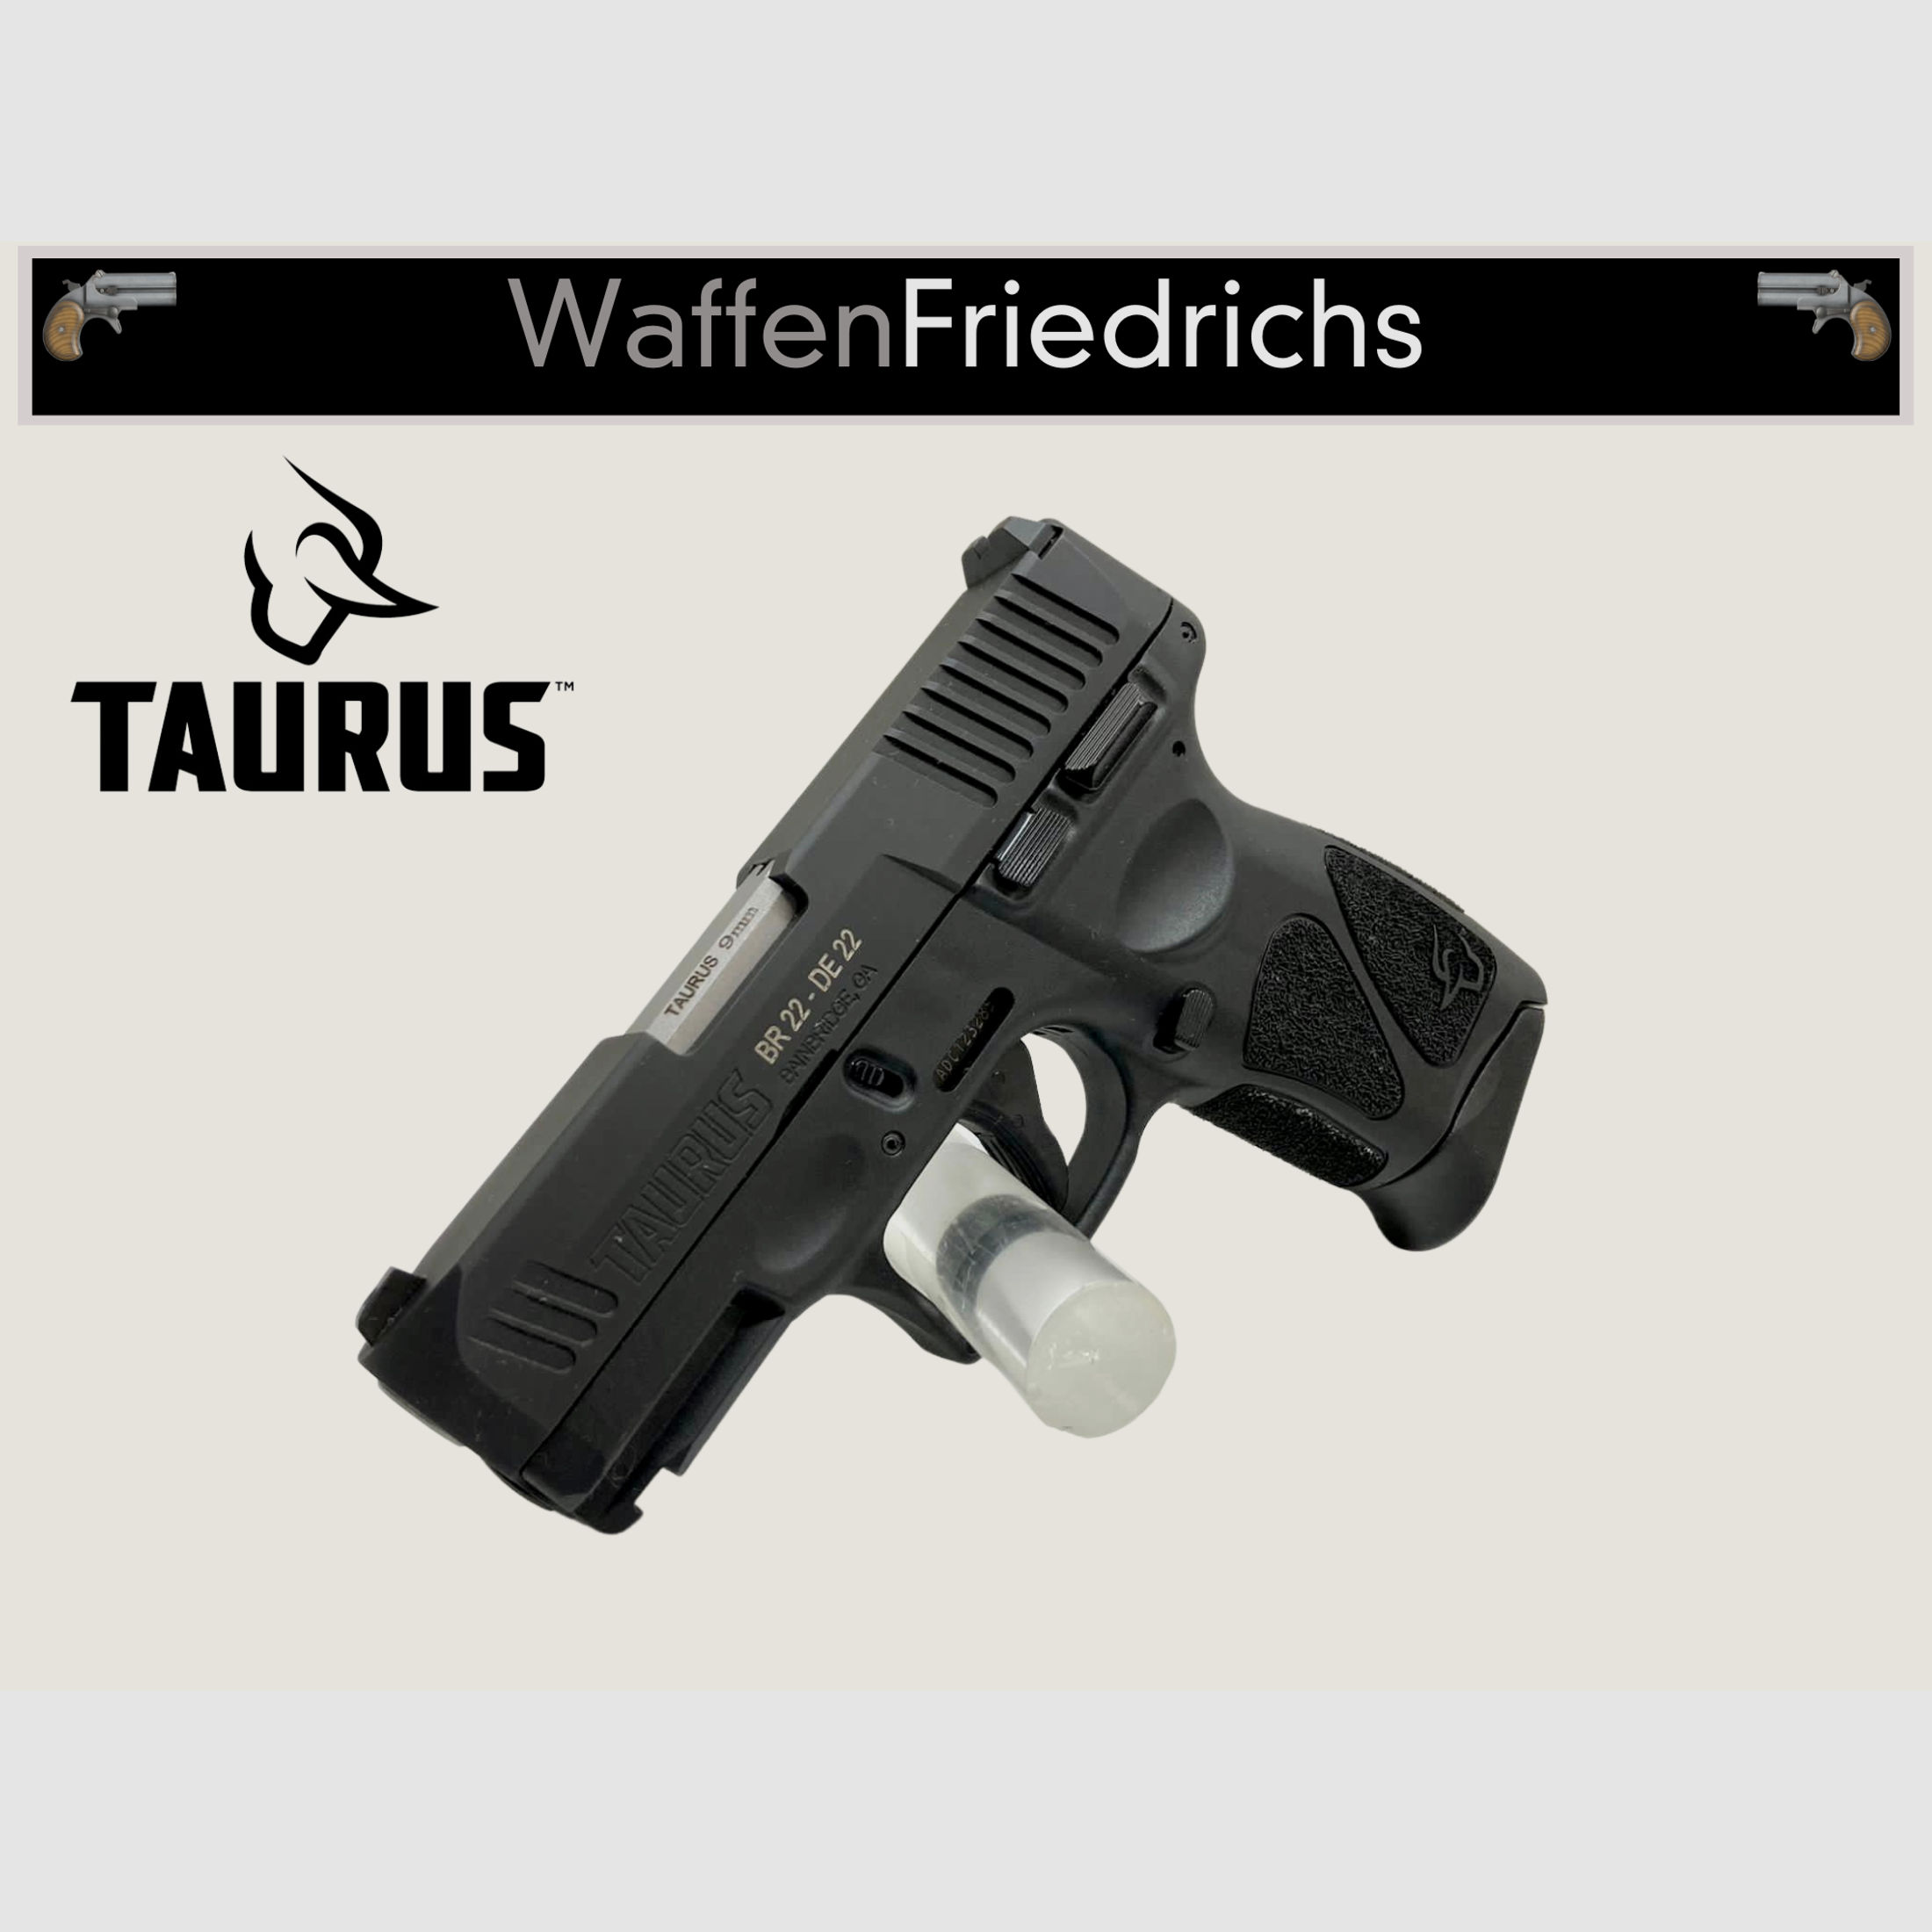 TAURUS G3C - WaffenFriedrichs